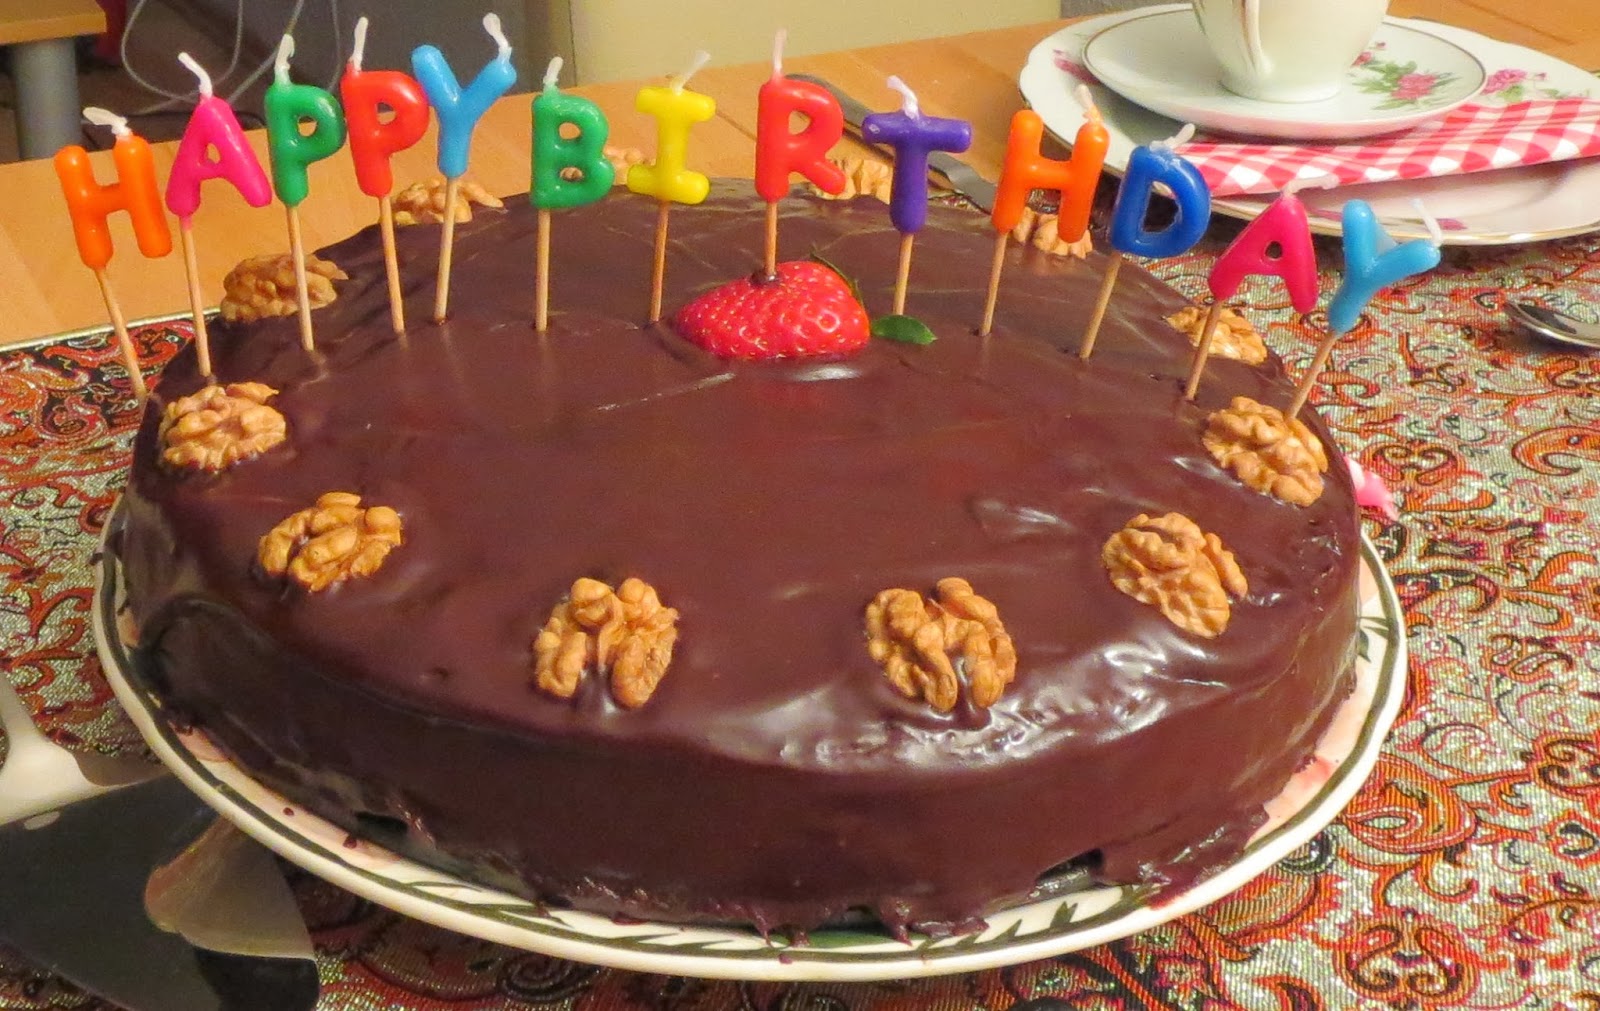 Nusstorte mit Schokoladenüberzug, bunten Geburtstagskerzen und Nuss-Dekoration